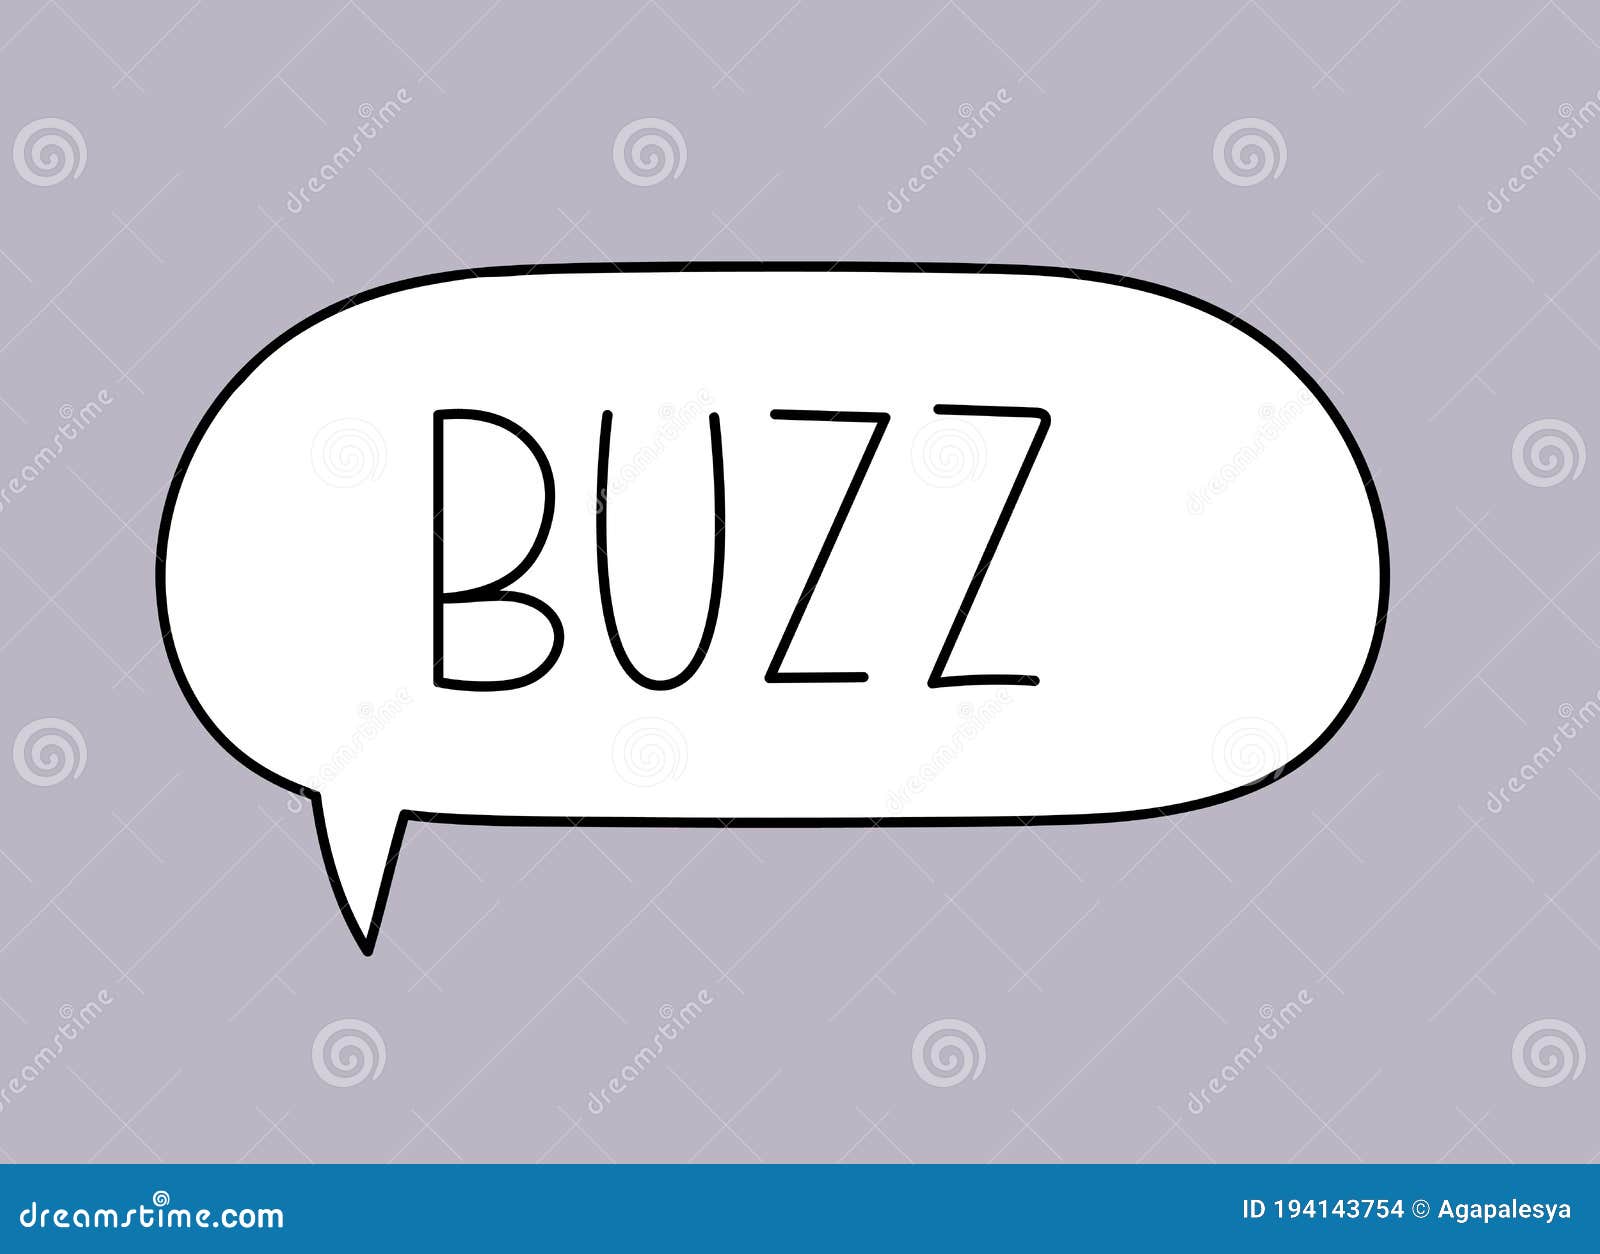 Buzz inscriptionhandwritten text in speech bubble Vector Image